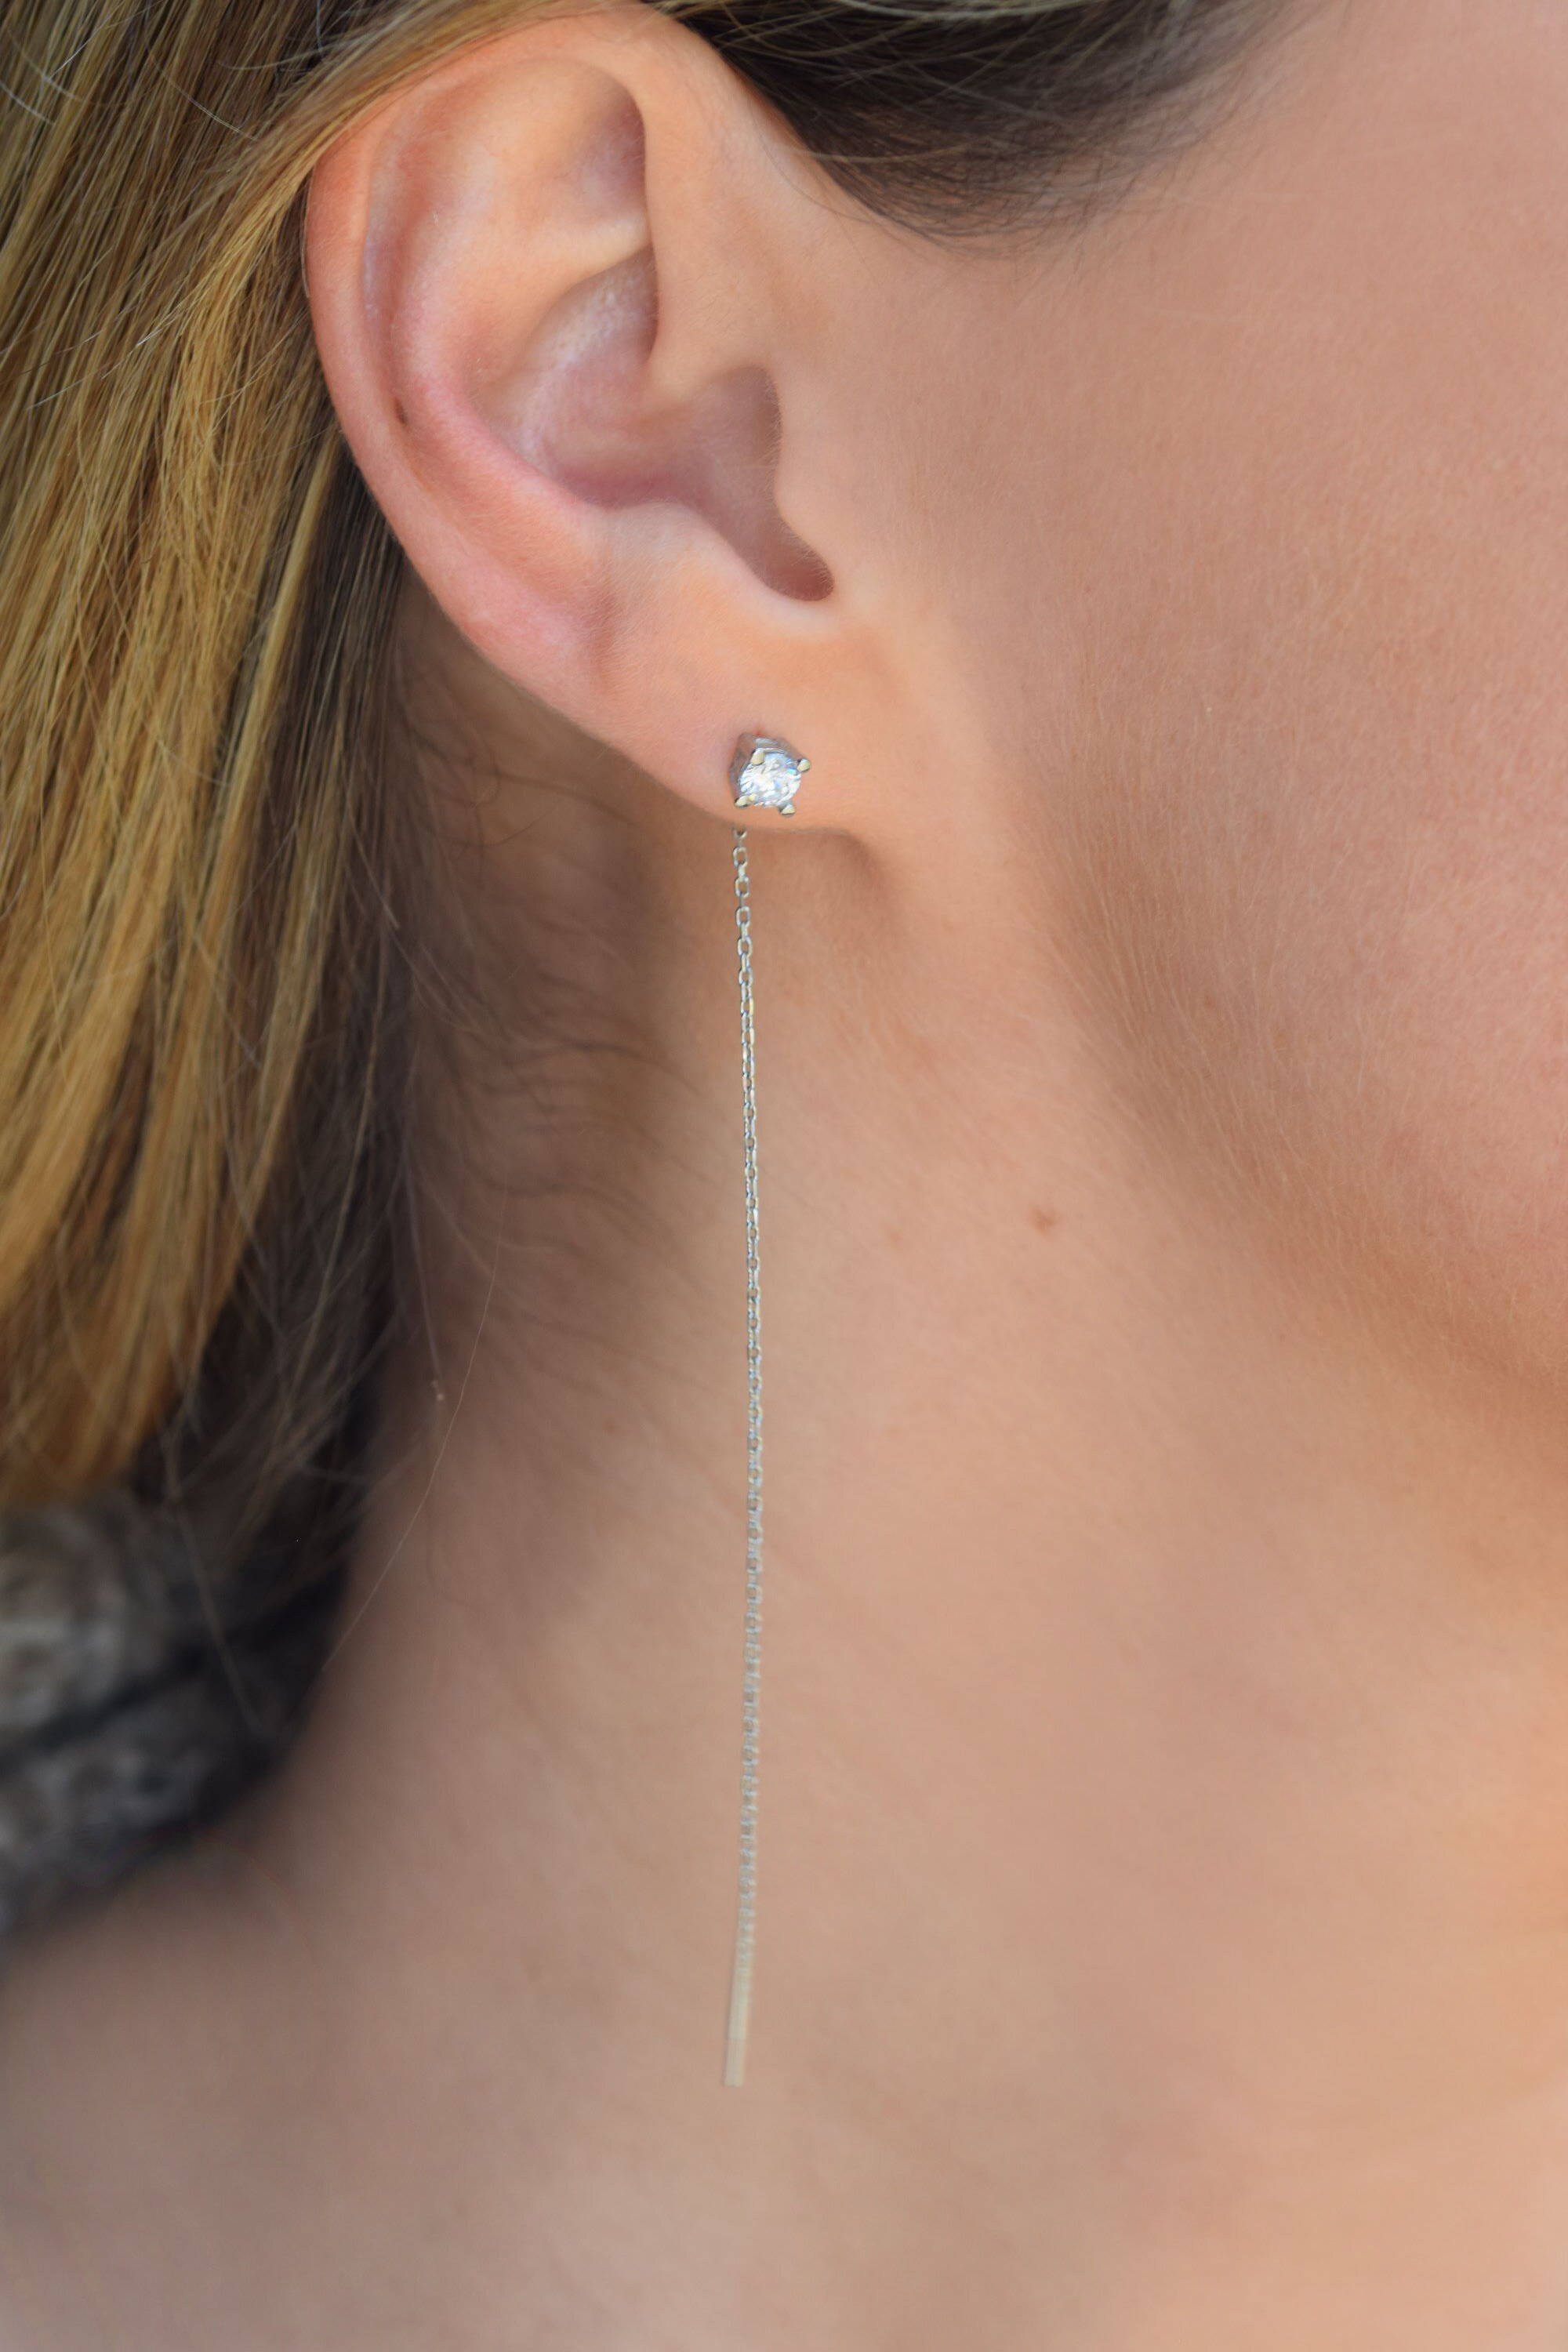 fcity.in - Crystal Hoop Earring For Woman Girl Under 100 / Earrings Under 50